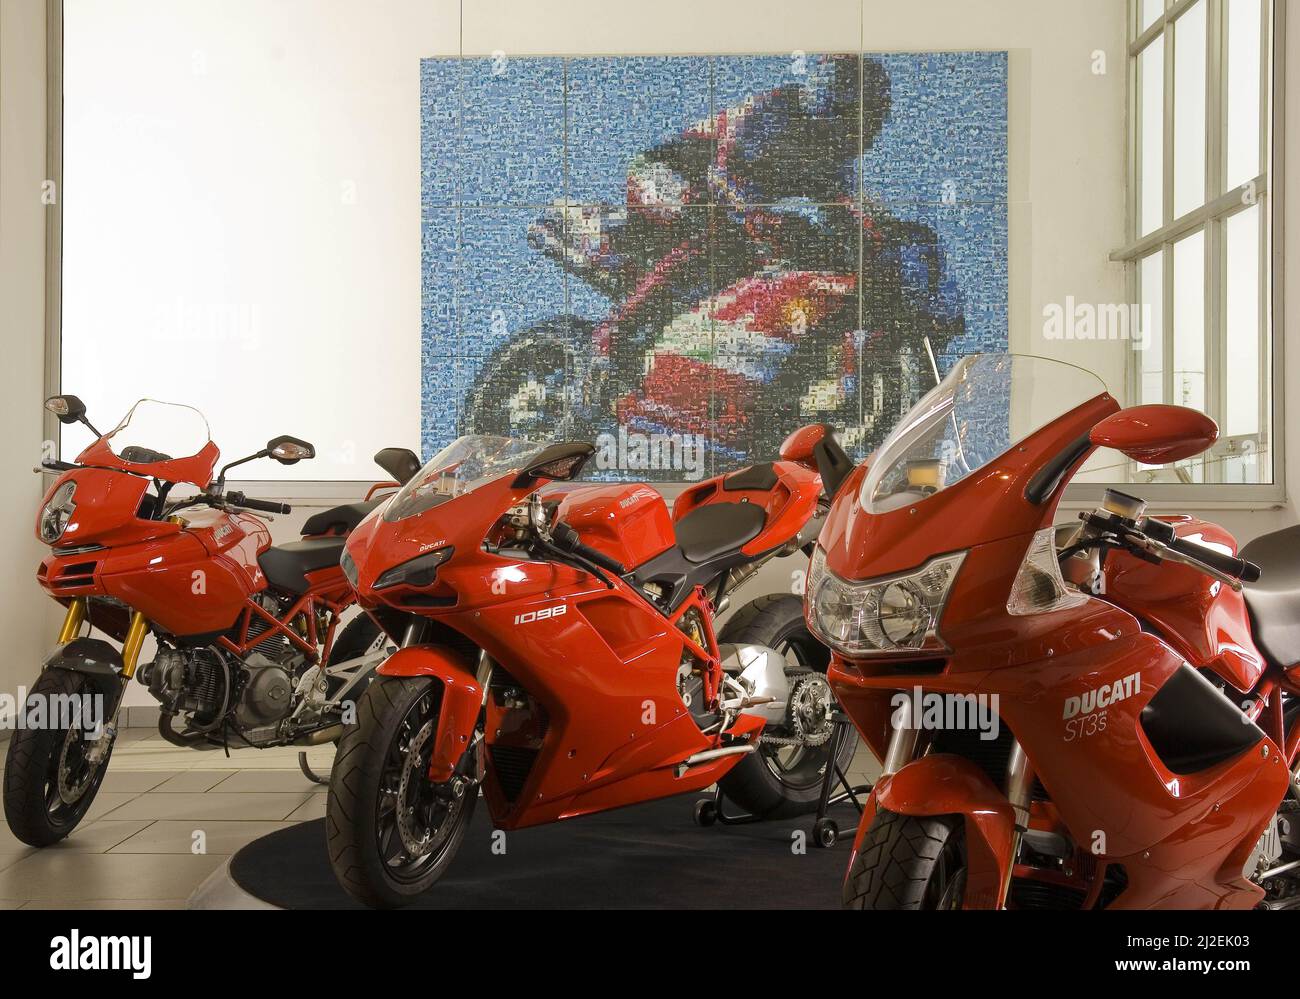 Italy, Bologna, Ducati factory museum   Photo © Sandro Michahelles/Sintesi/Alamy Stock Photo Stock Photo